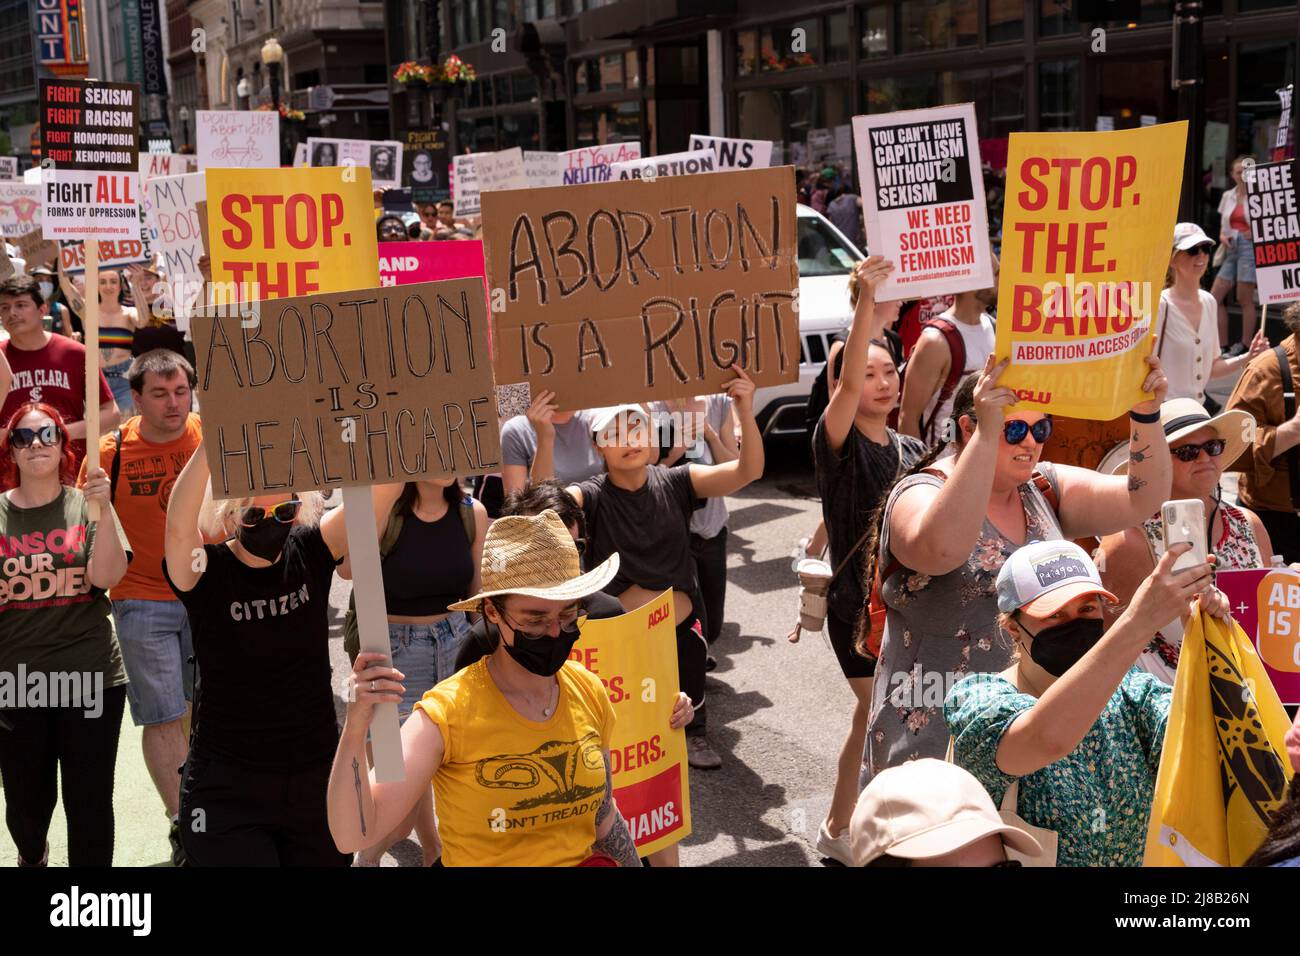 14 de mayo de 2022, Boston, Massachusetts EE.UU.: Manifestantes marchan durante una protesta por los derechos del aborto en Boston. Los manifestantes por la prohibición del aborto se están congregando en todo el país ante una decisión anticipada de la Corte Suprema que podría anular a las mujeres a un aborto. Crédito: Keiko Hiromi/AFLO/Alamy Live News Foto de stock